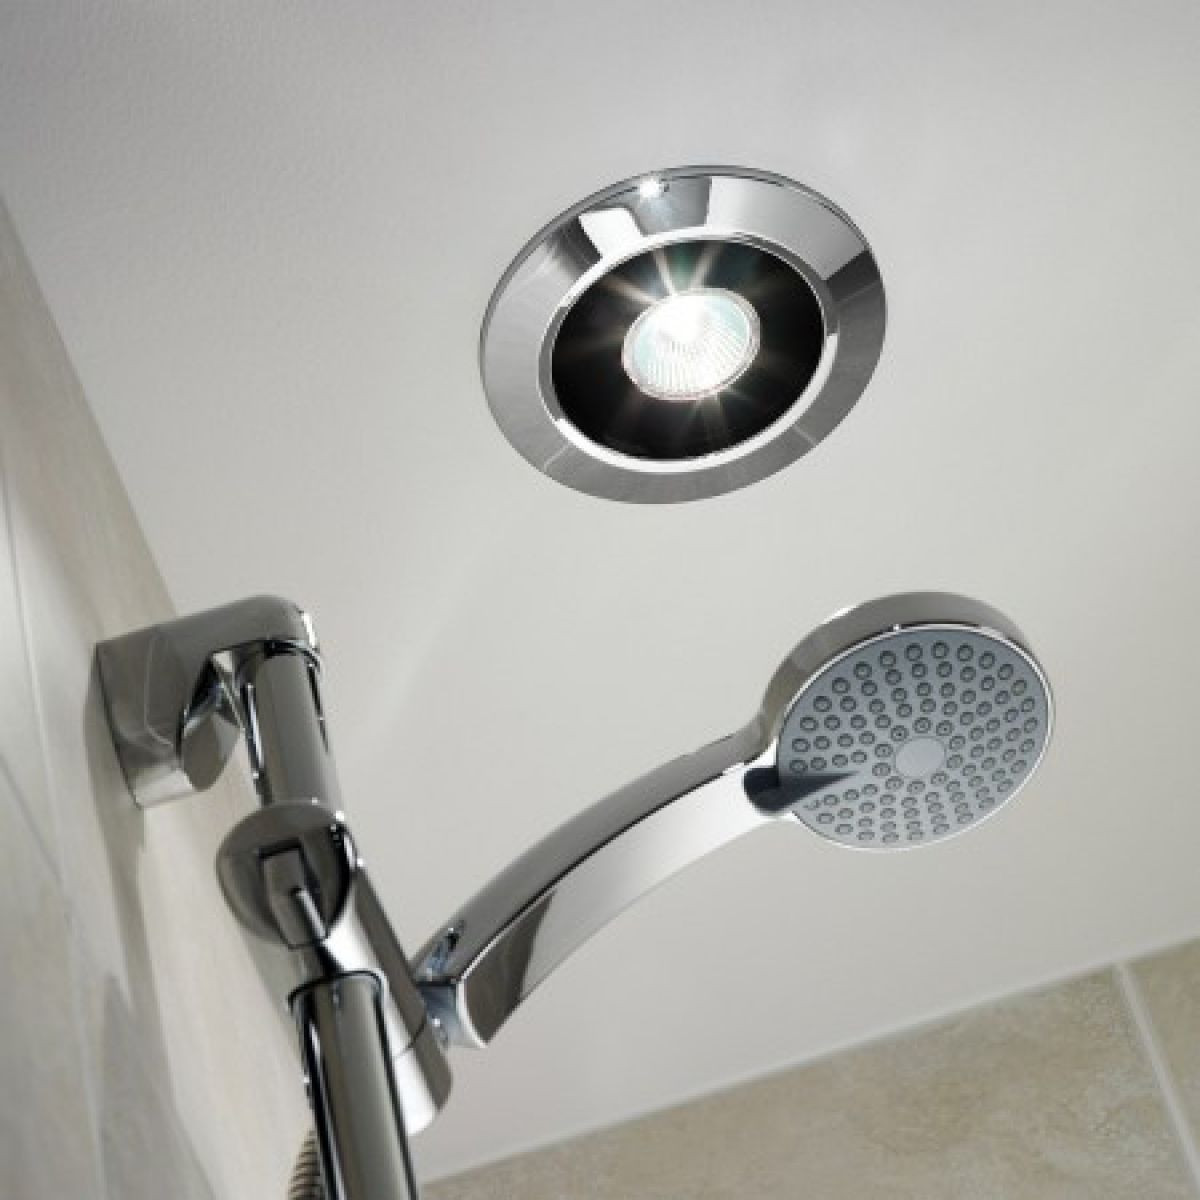 Bathroom Ceiling Light With Fan
 Extractor fan bathroom ceiling mounted choosing bathroom